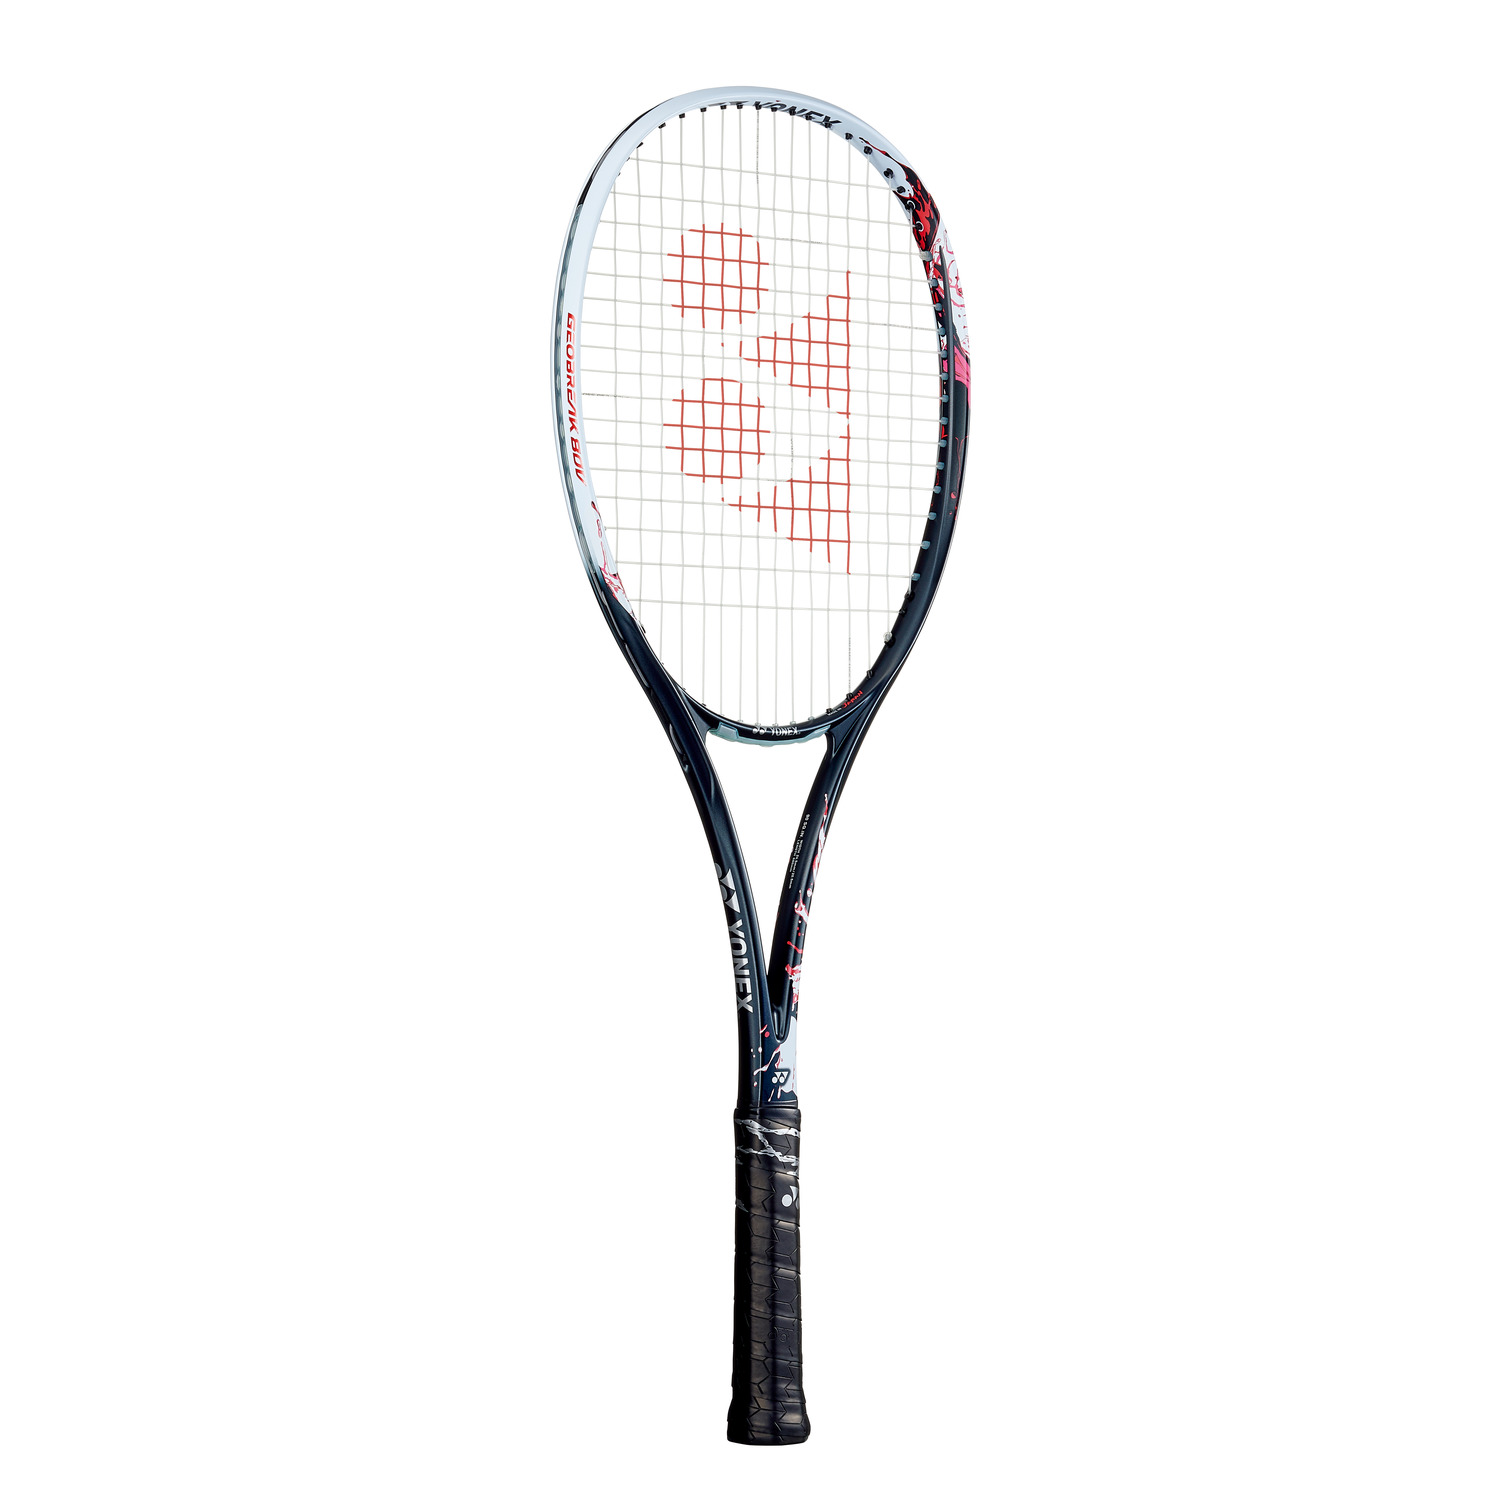 YONEX ジオブレイク80v ソフトテニス ラケット-